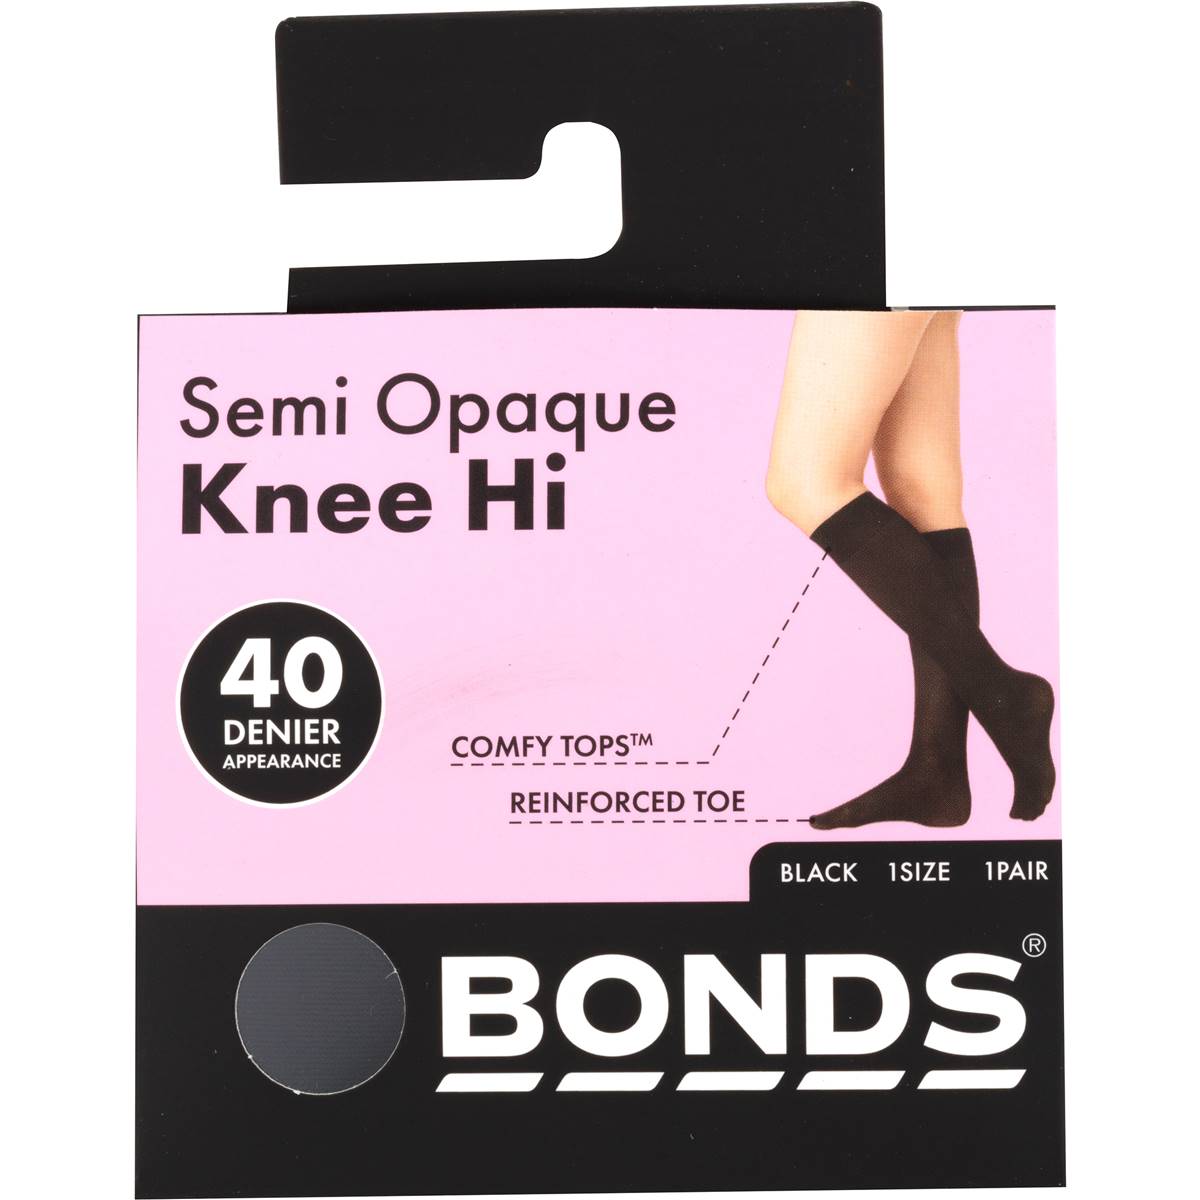 Bonds Comfy Tops Semi Opaque Knee High Black 1 Size